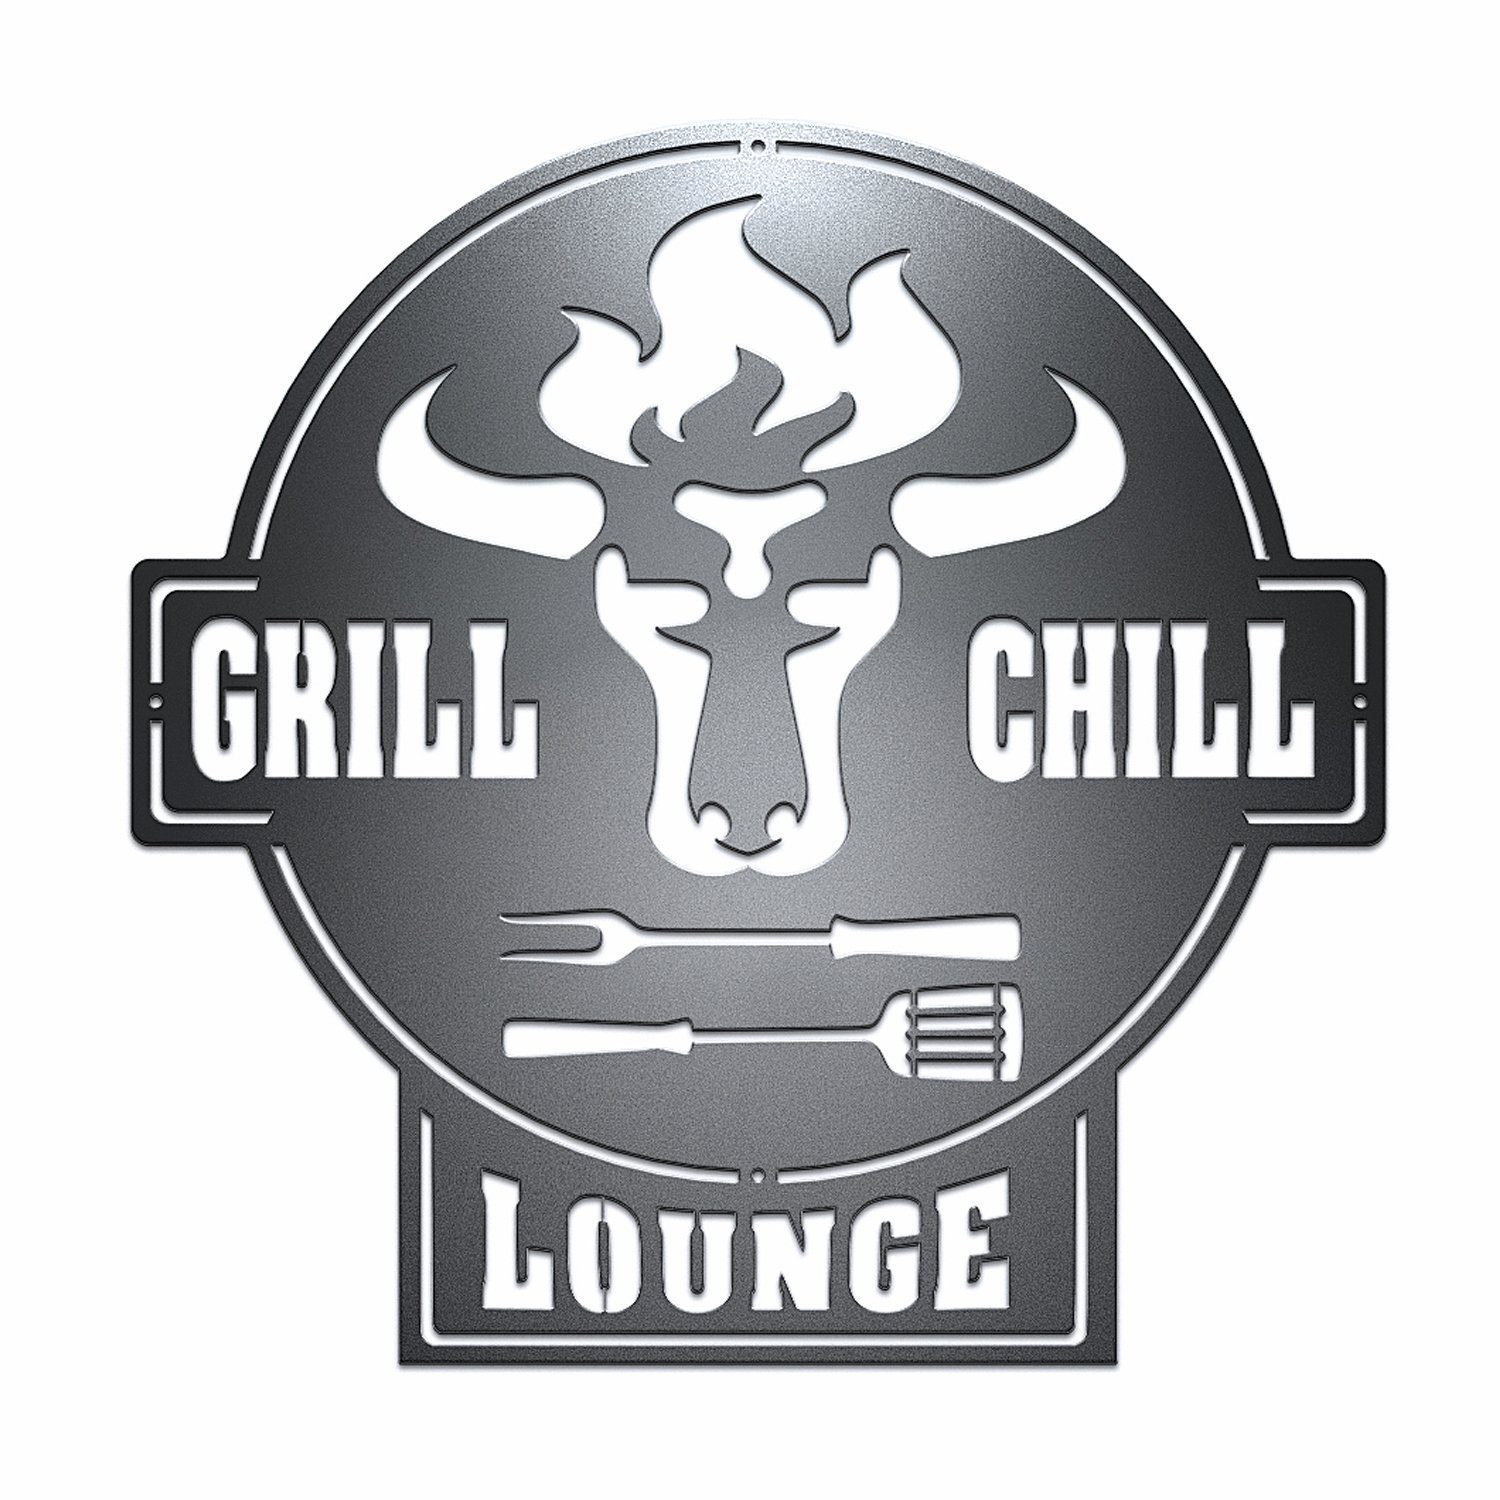 teileplus24 Wanddekoobjekt CG01 Gartenschild Grill Schild Metallschild BBQ Grill & Chill Lounge BBQ Lounge Schwarz